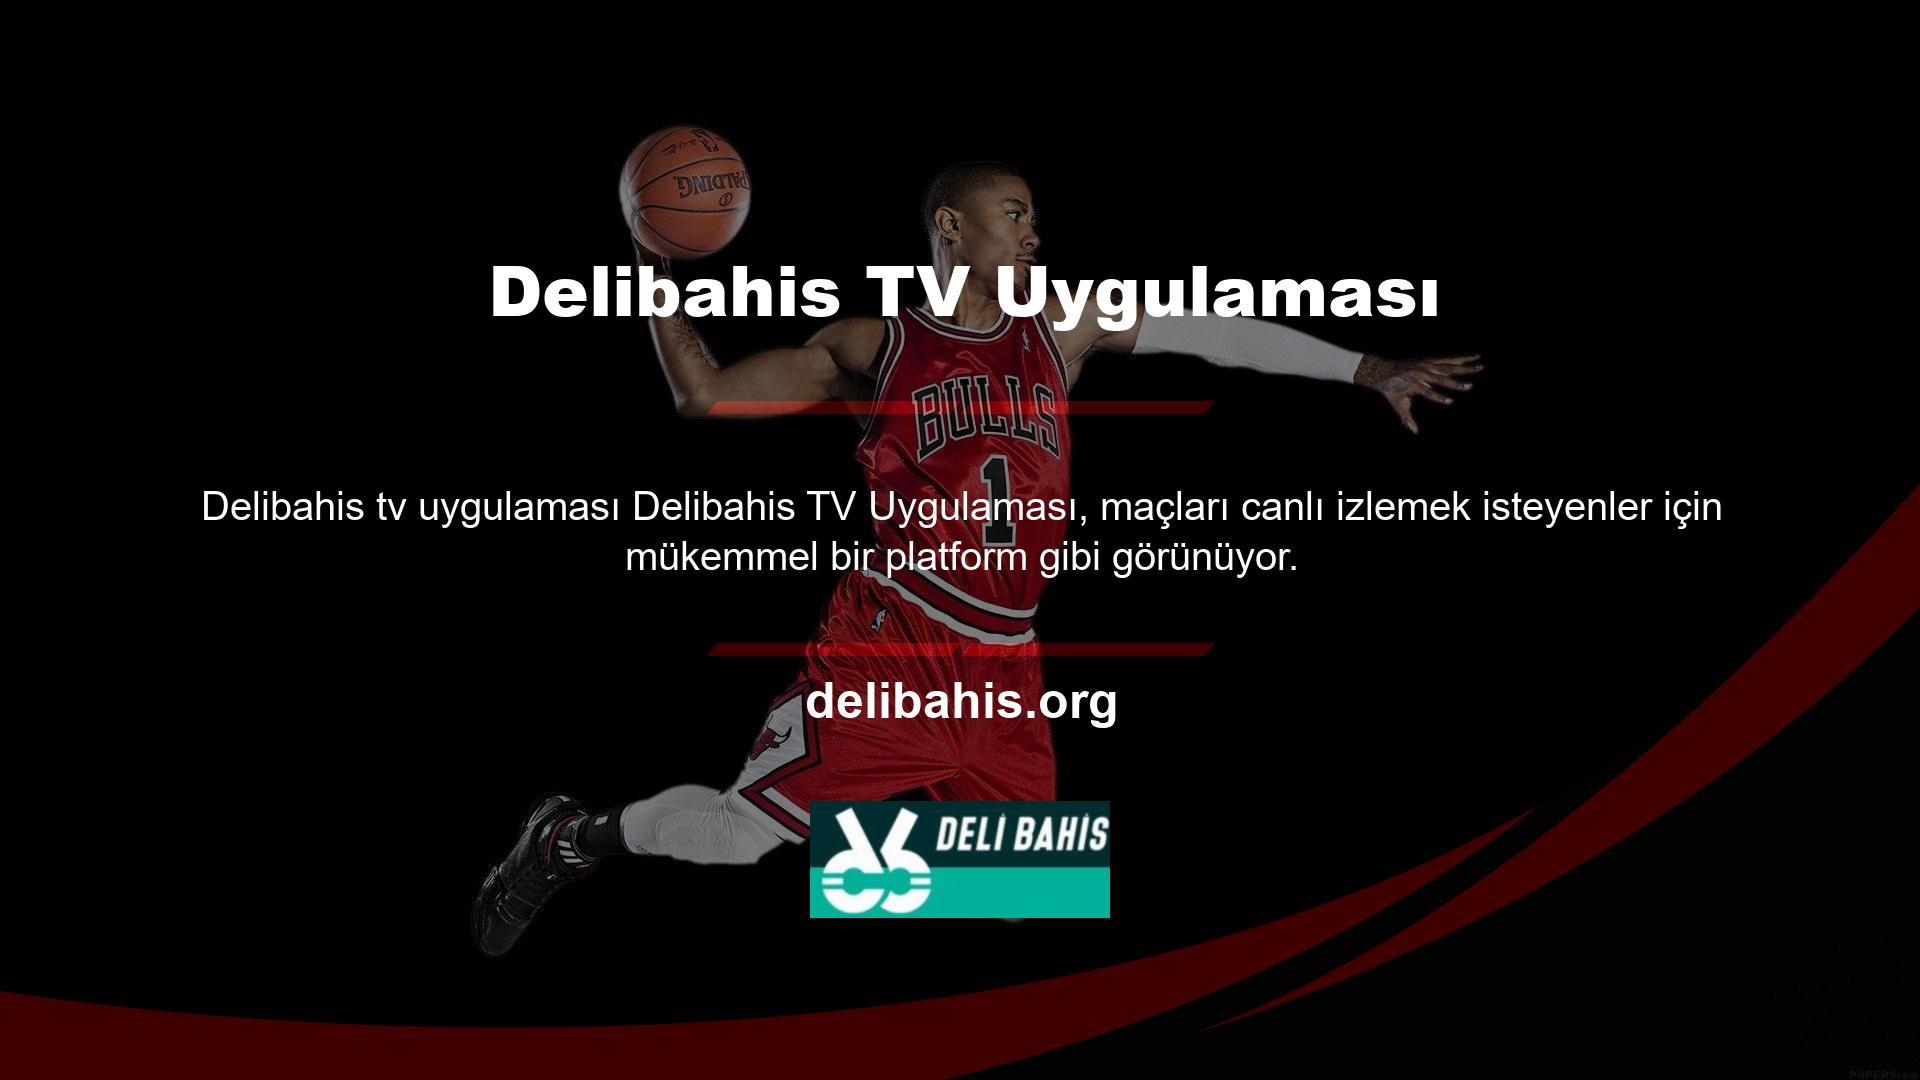 TV izleme hizmeti, çeşitli spor dallarına ait görüntüleri HD kalitesinde ekranınızda gösterir